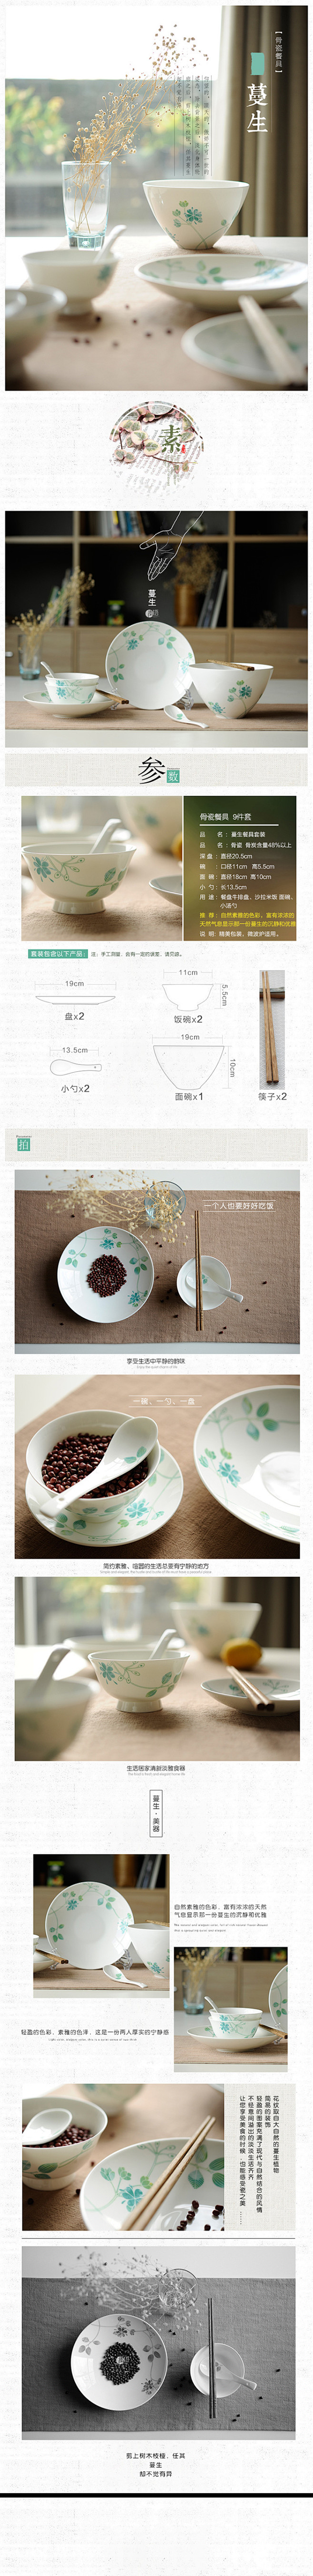 蔓生陶瓷餐具详情页 青语陶瓷